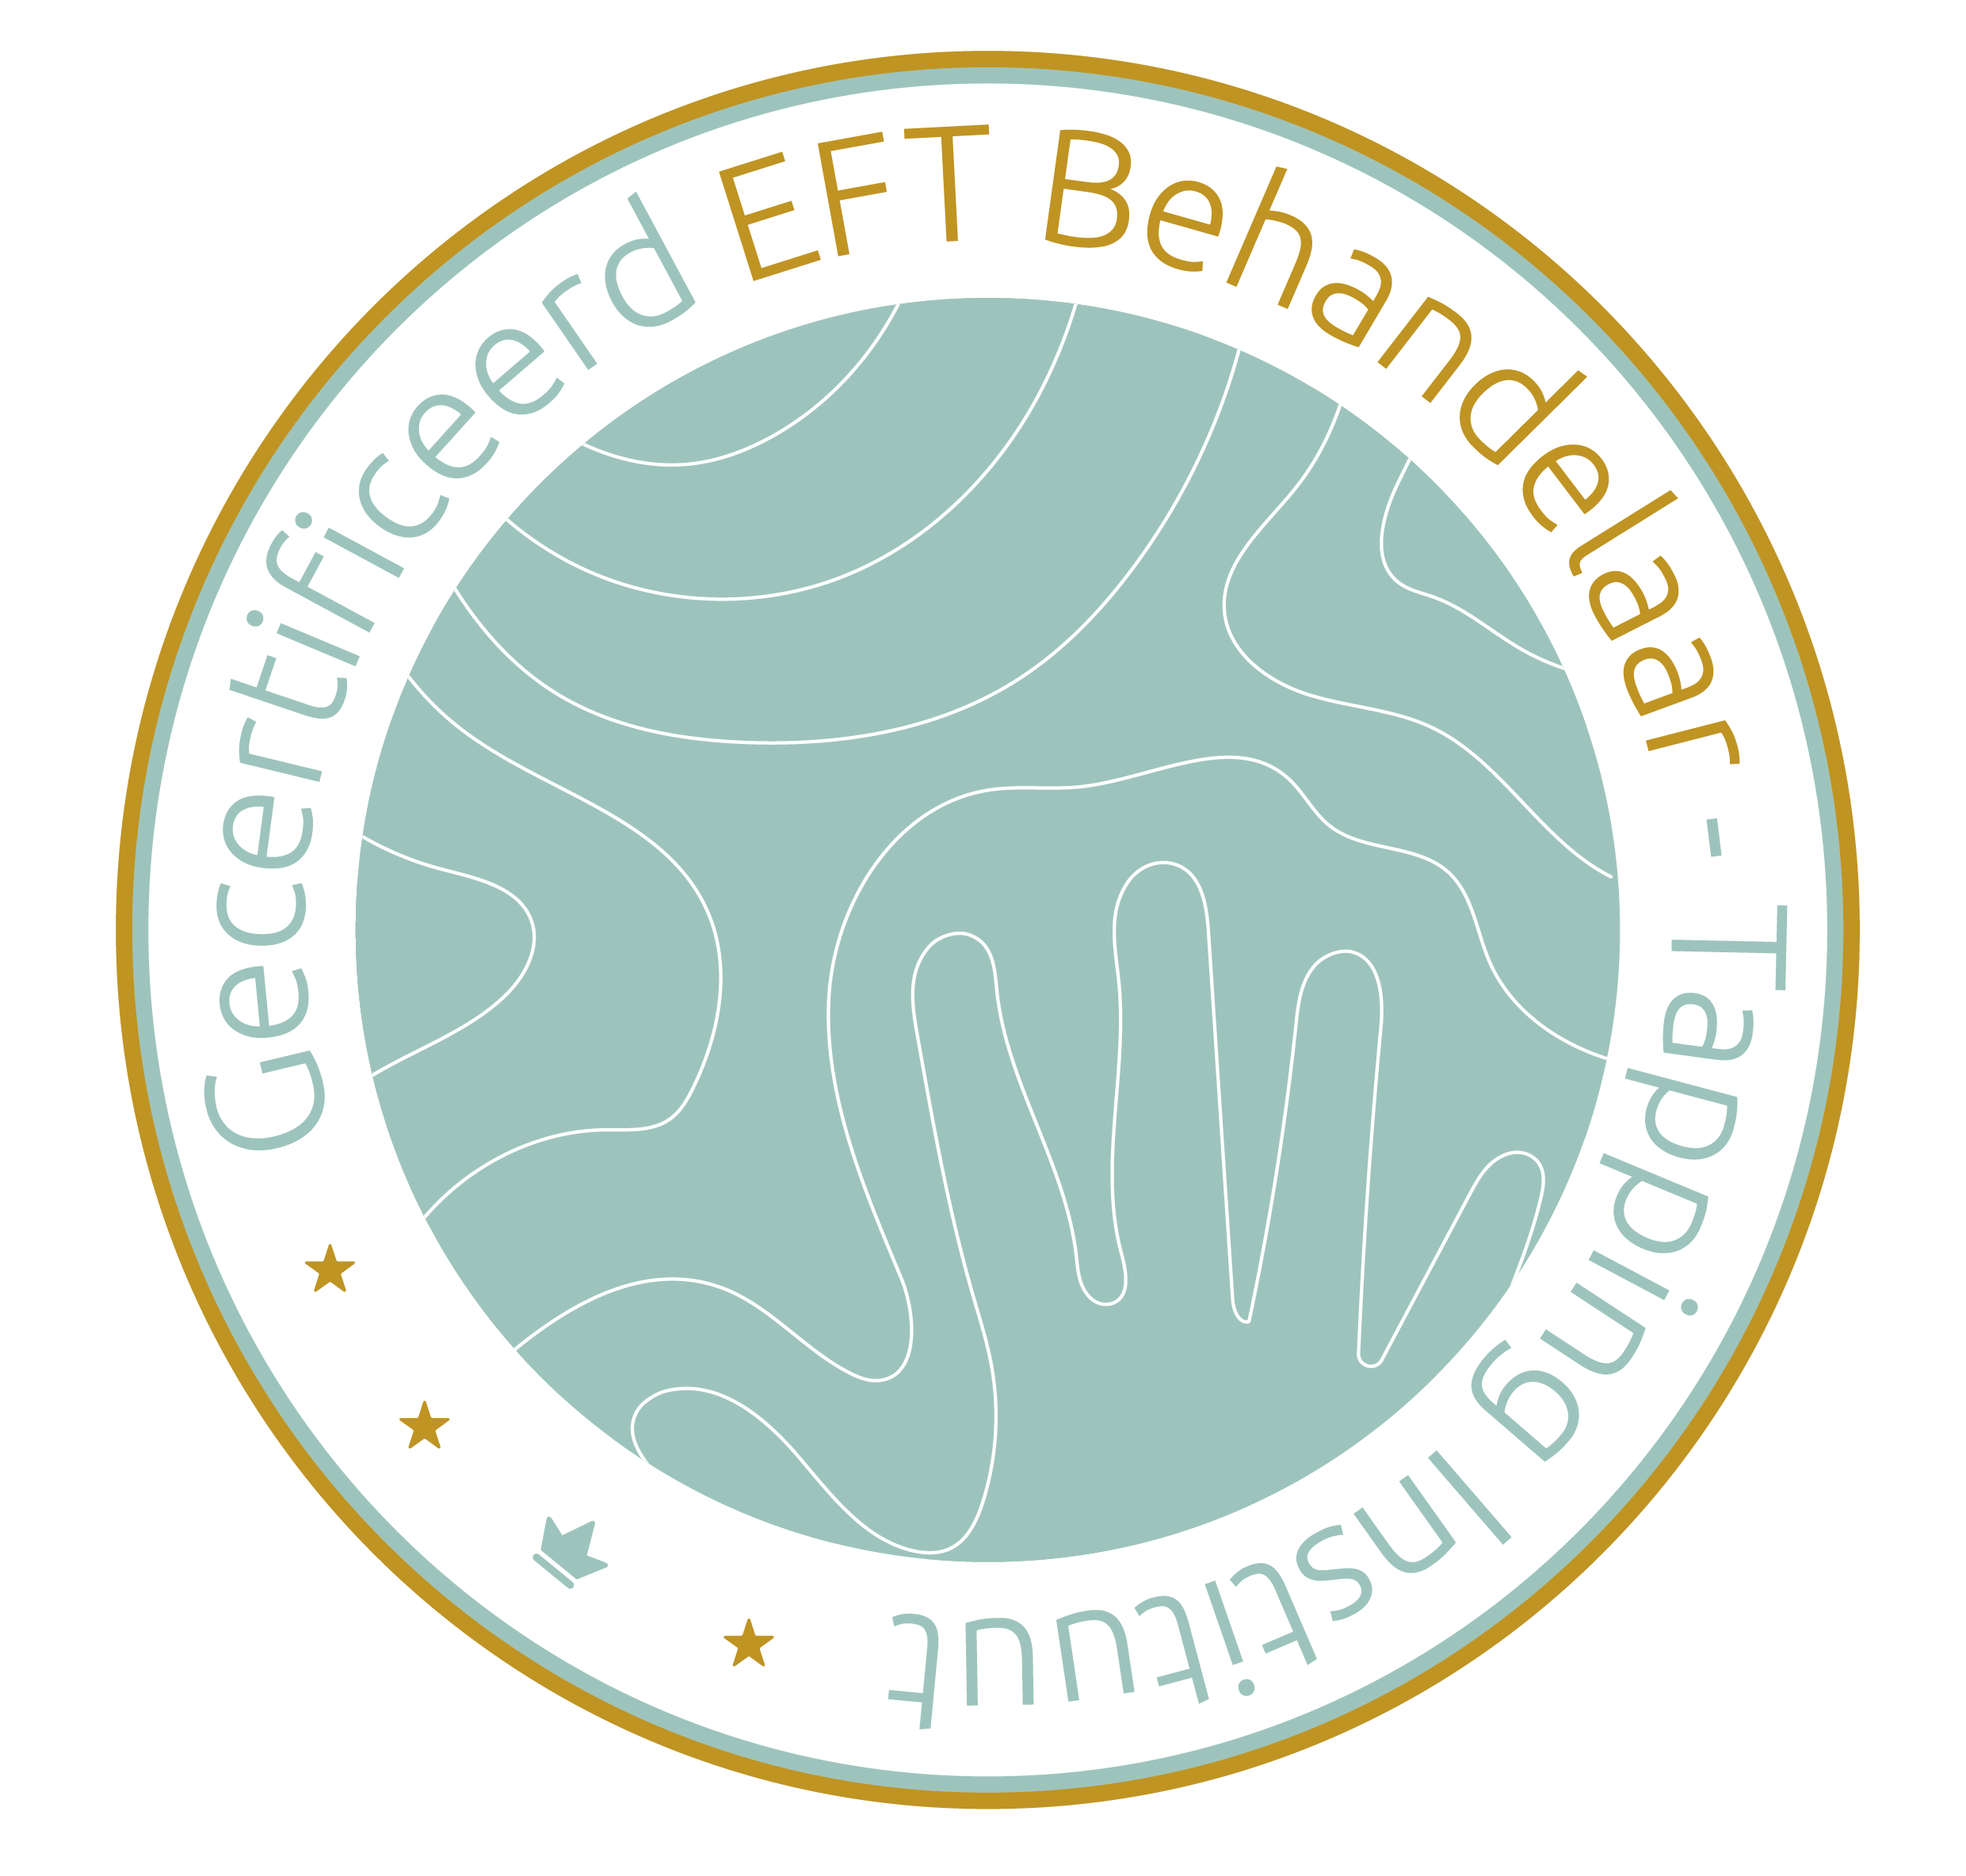 Gecertificeerd EFT behandelaar - Tapping Instituut